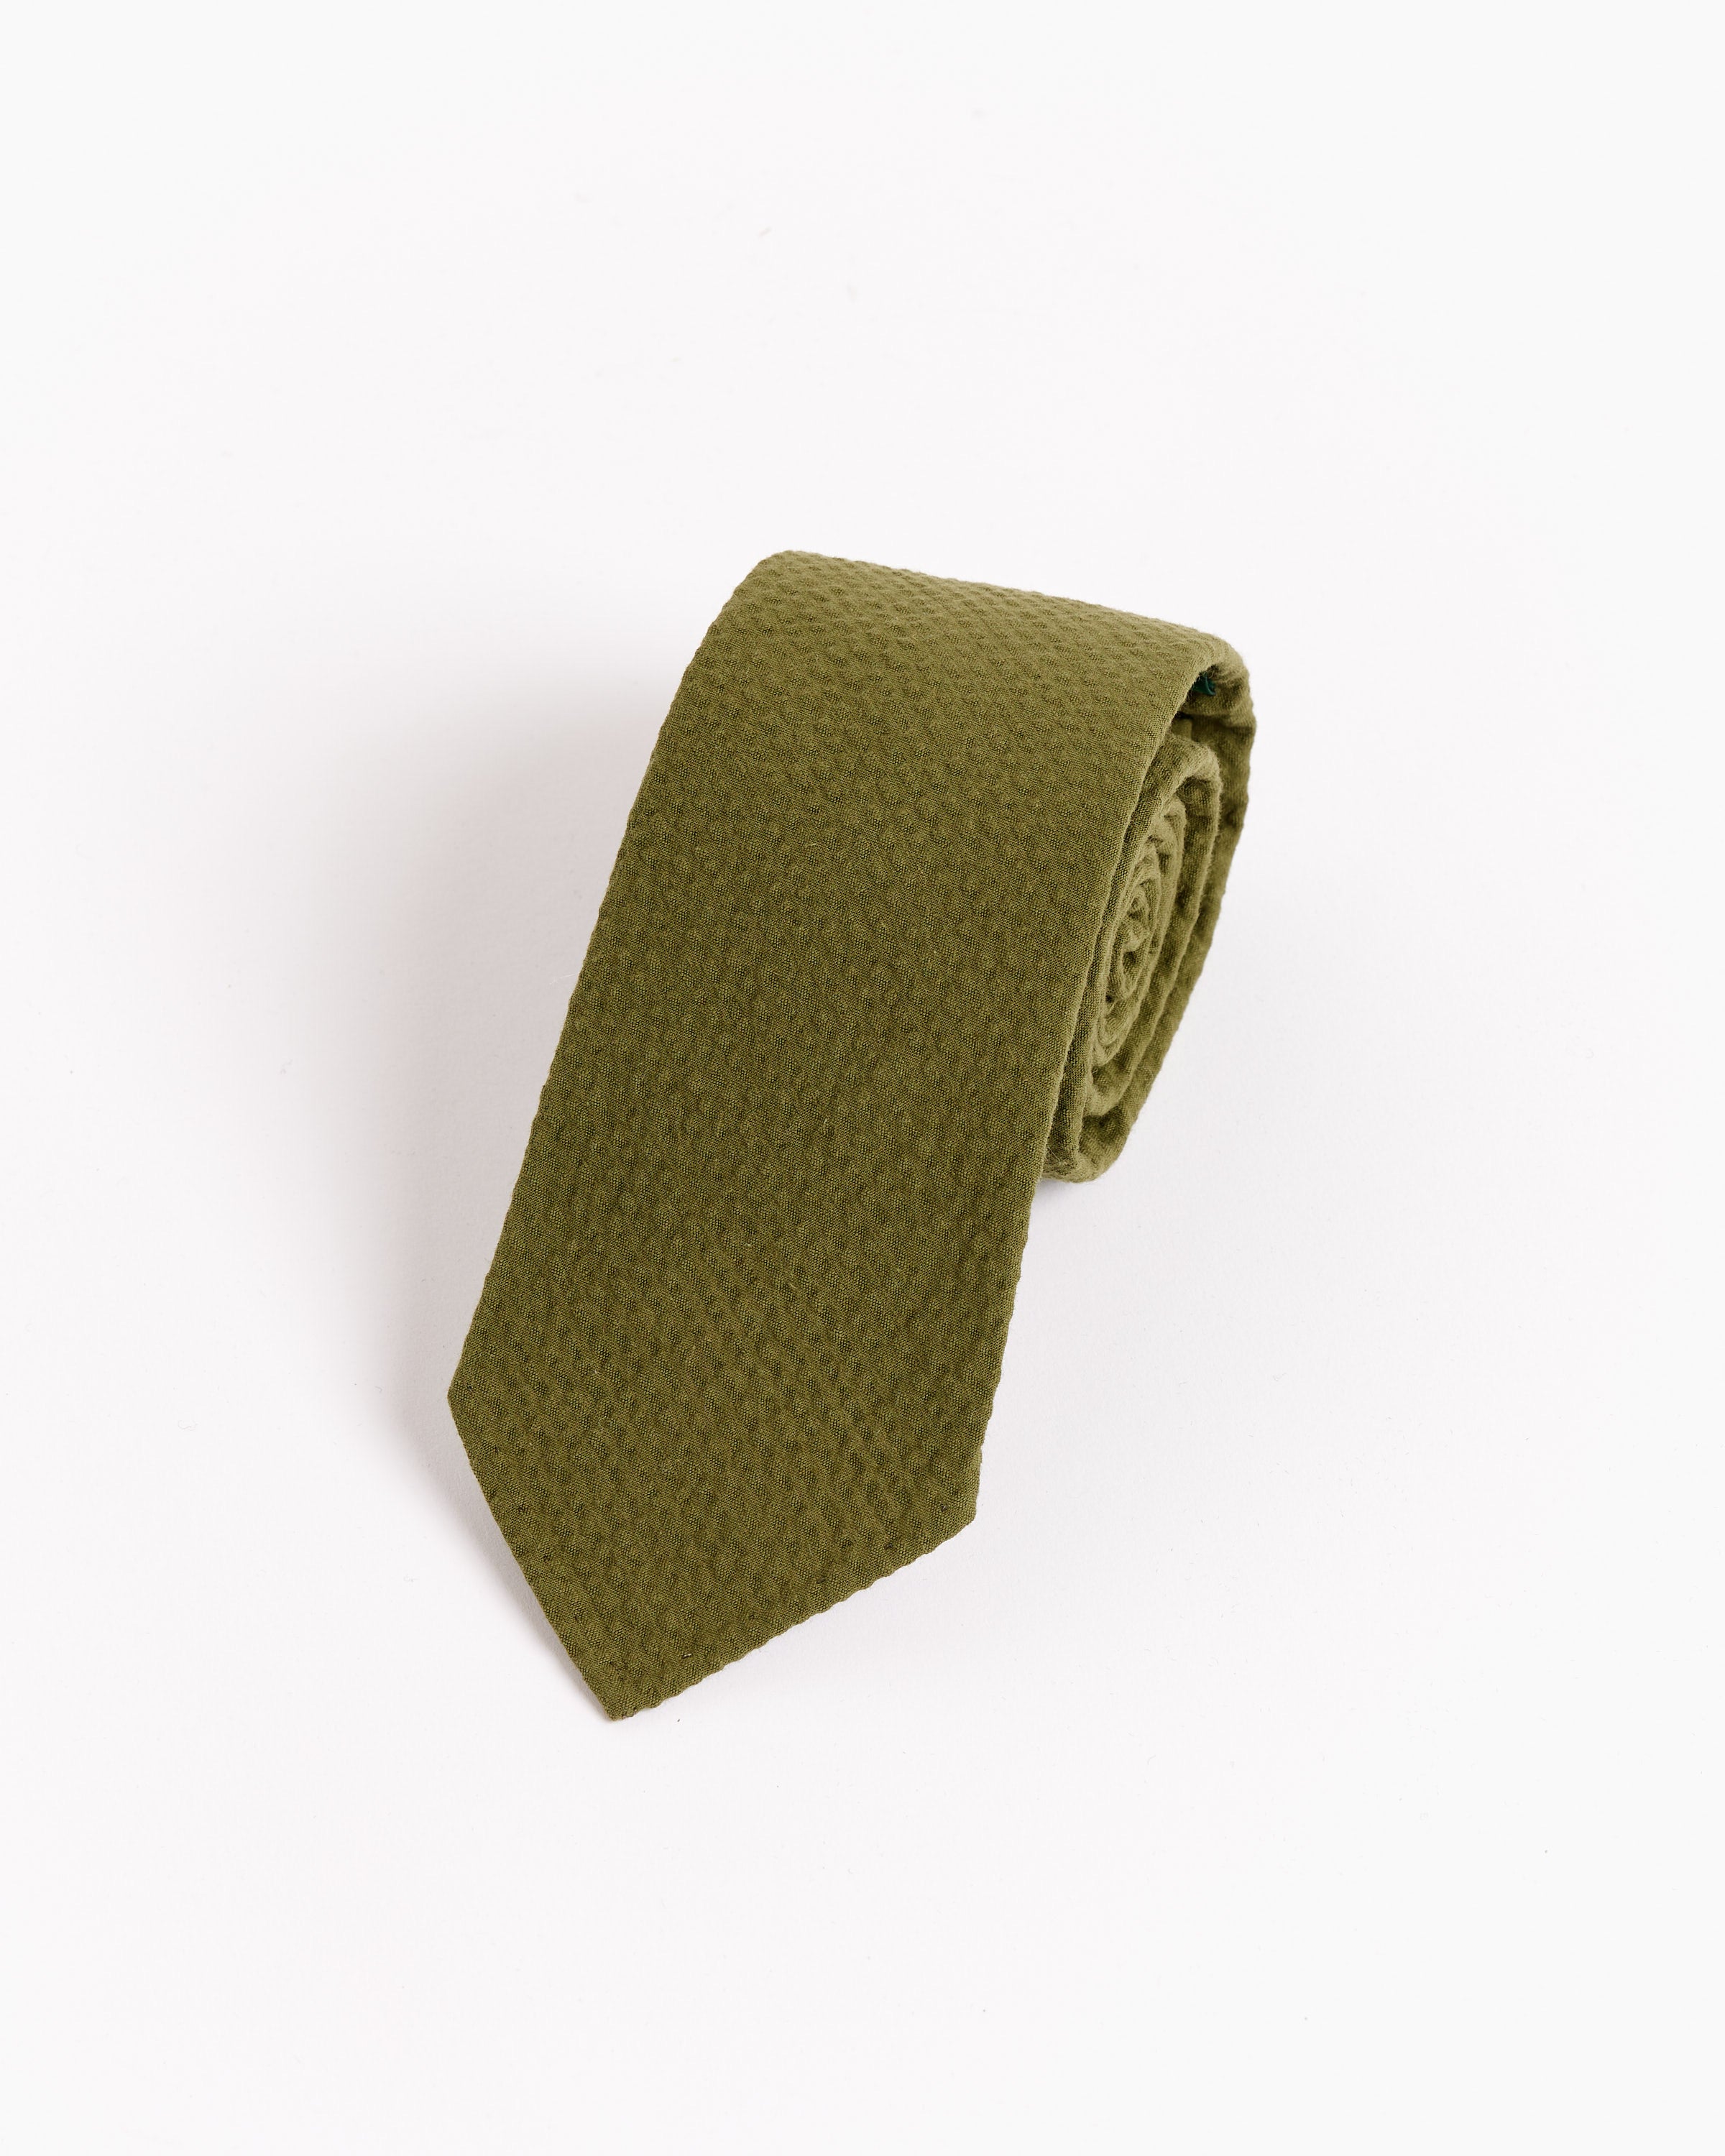 SMOCK x Gitman Vintage Tie Seersucker in Pesto